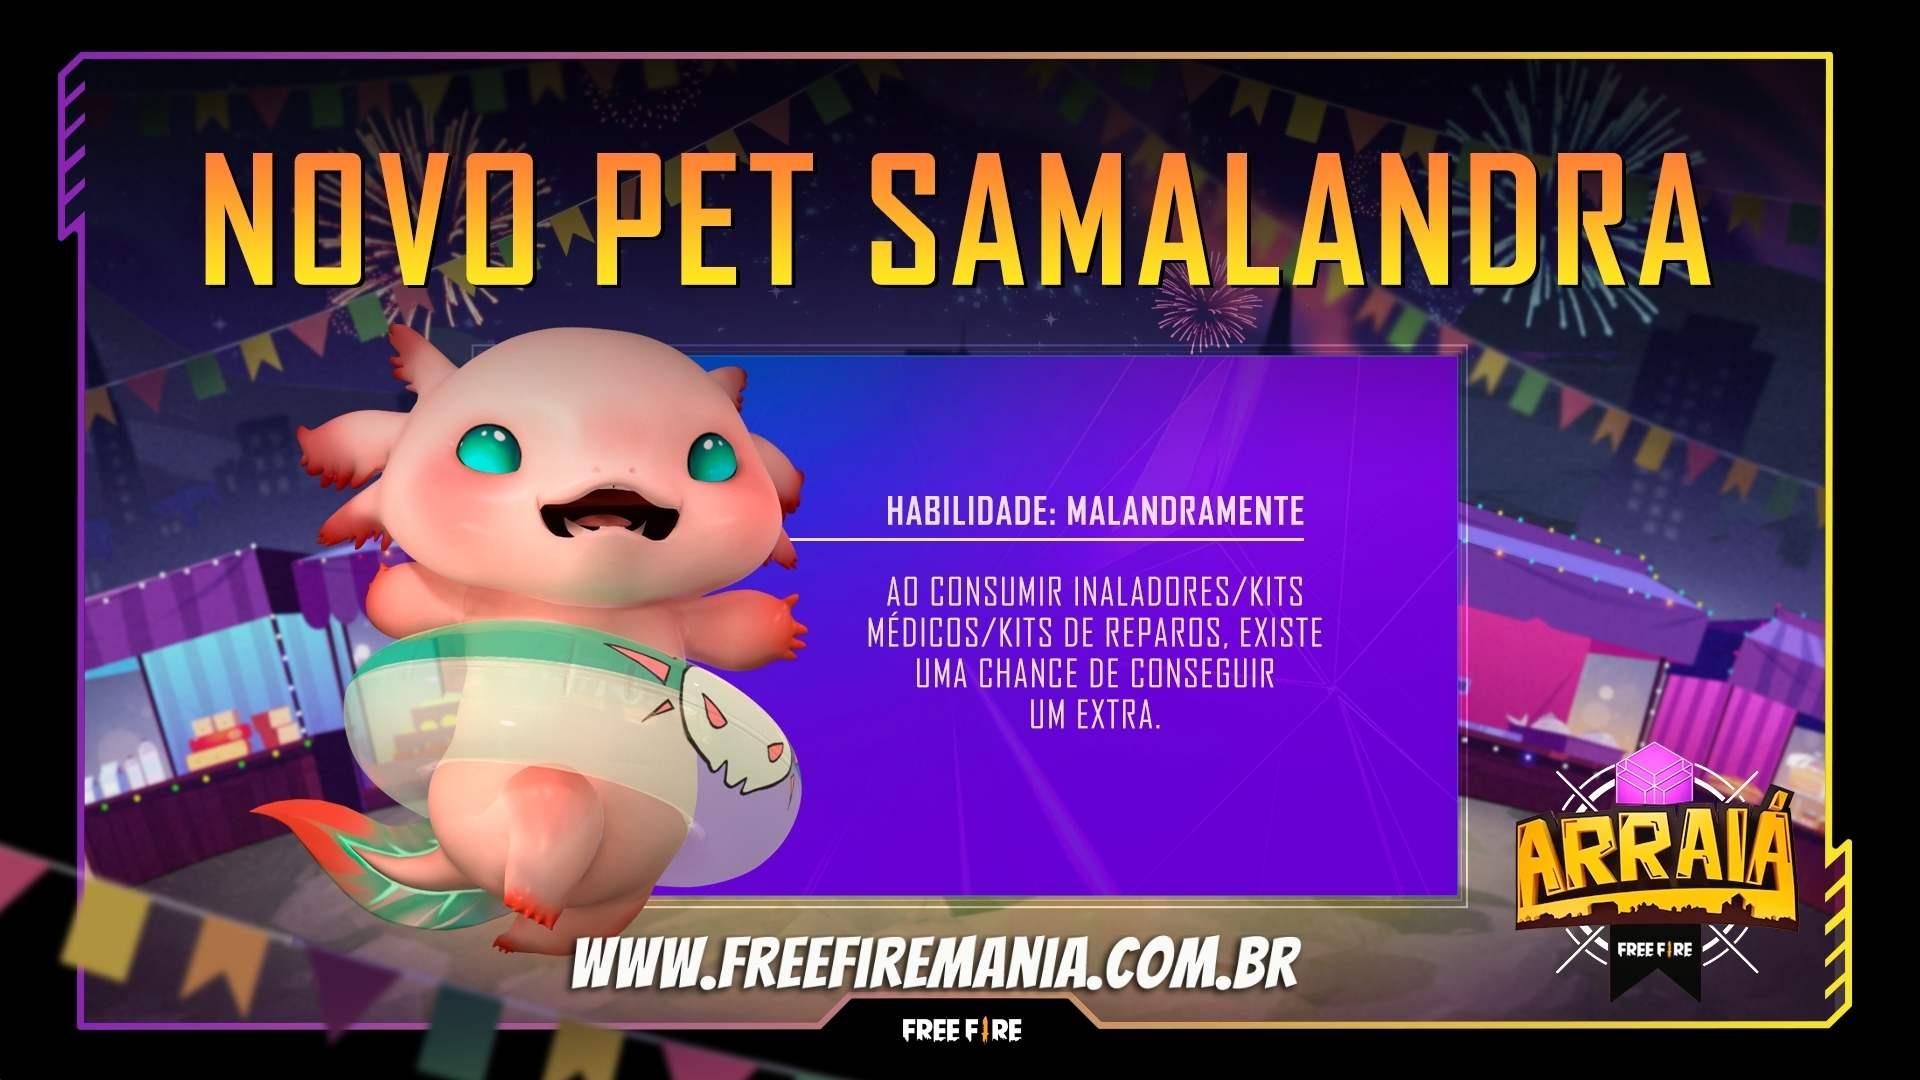 Salamandra Free Fire: novo pet do jogo é liberado grátis; confira habilidade